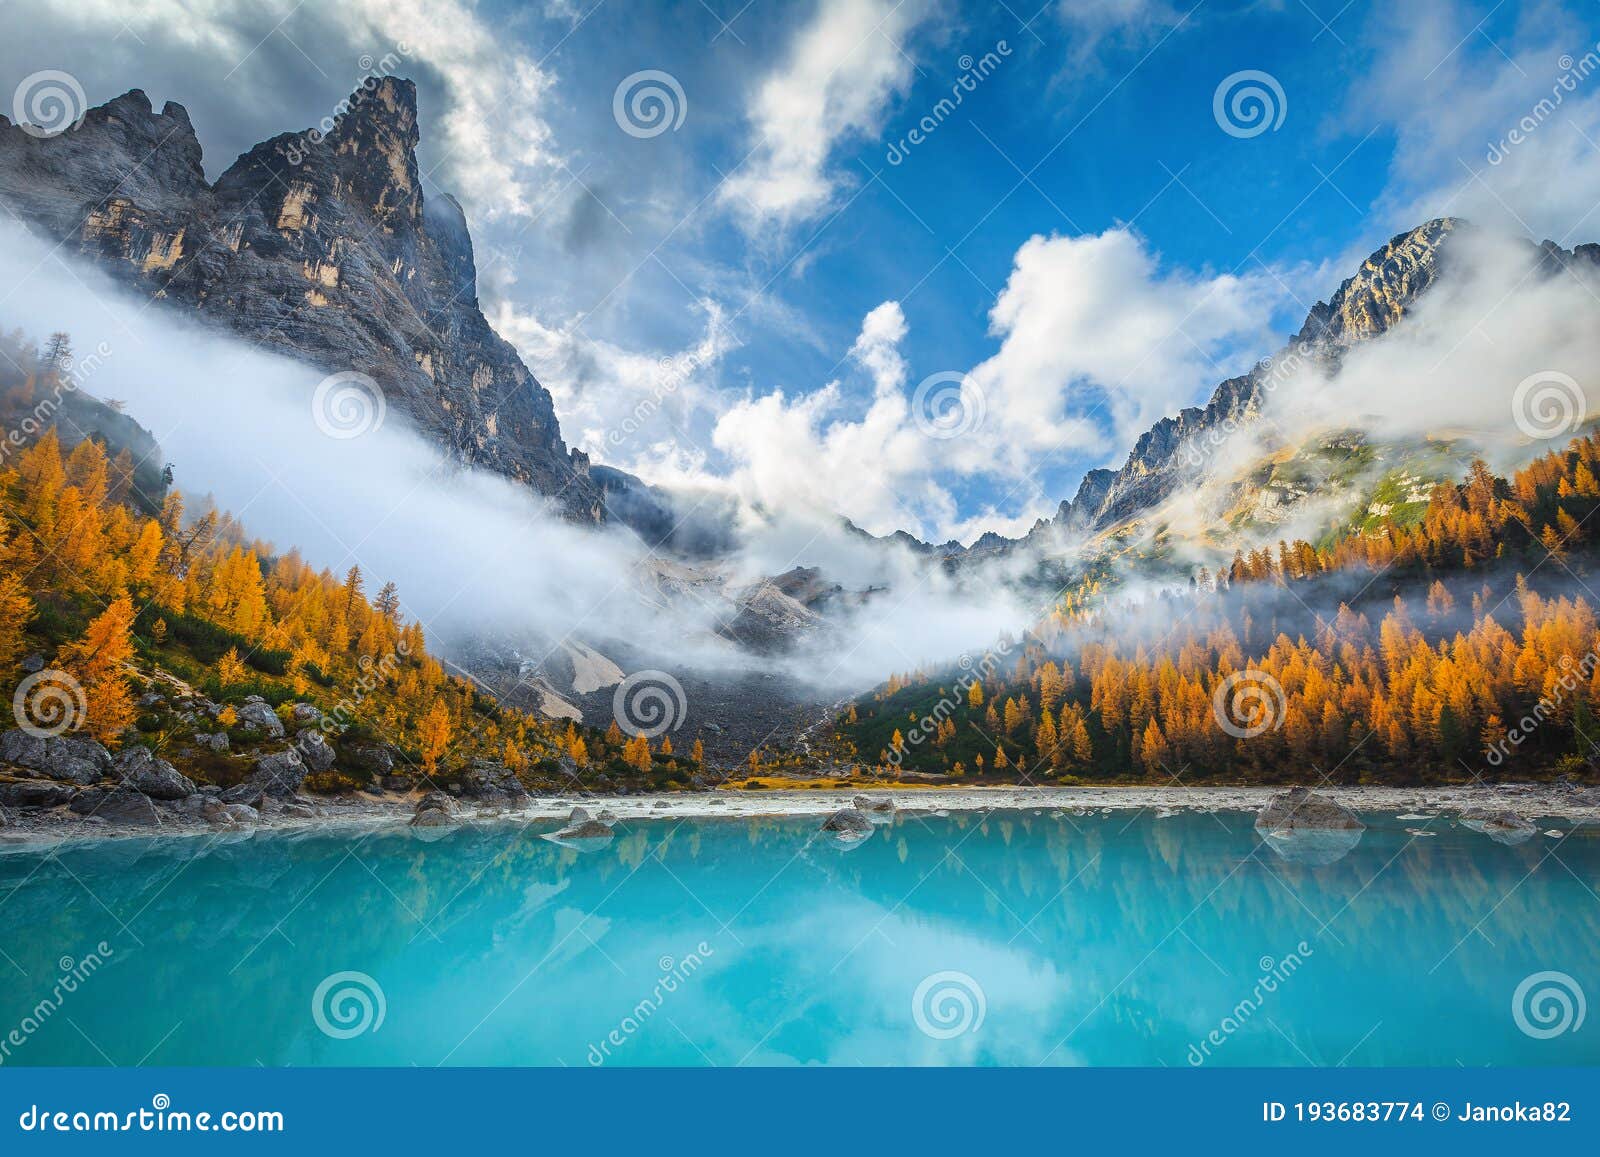 amazing misty autumn scenery with lake sorapis, dolomites, italy